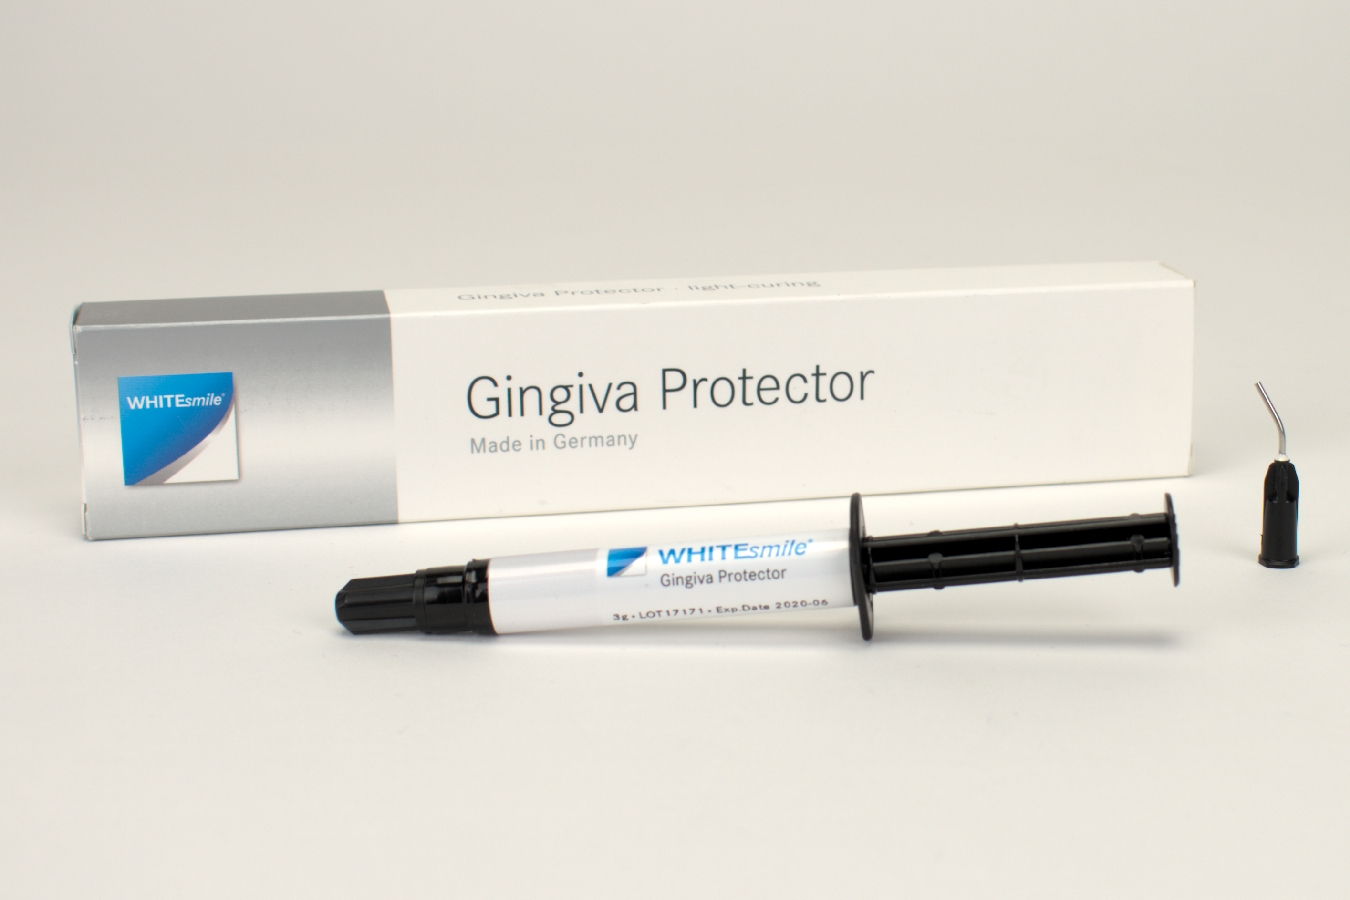 White Smile Gingiva Protector lg 3g